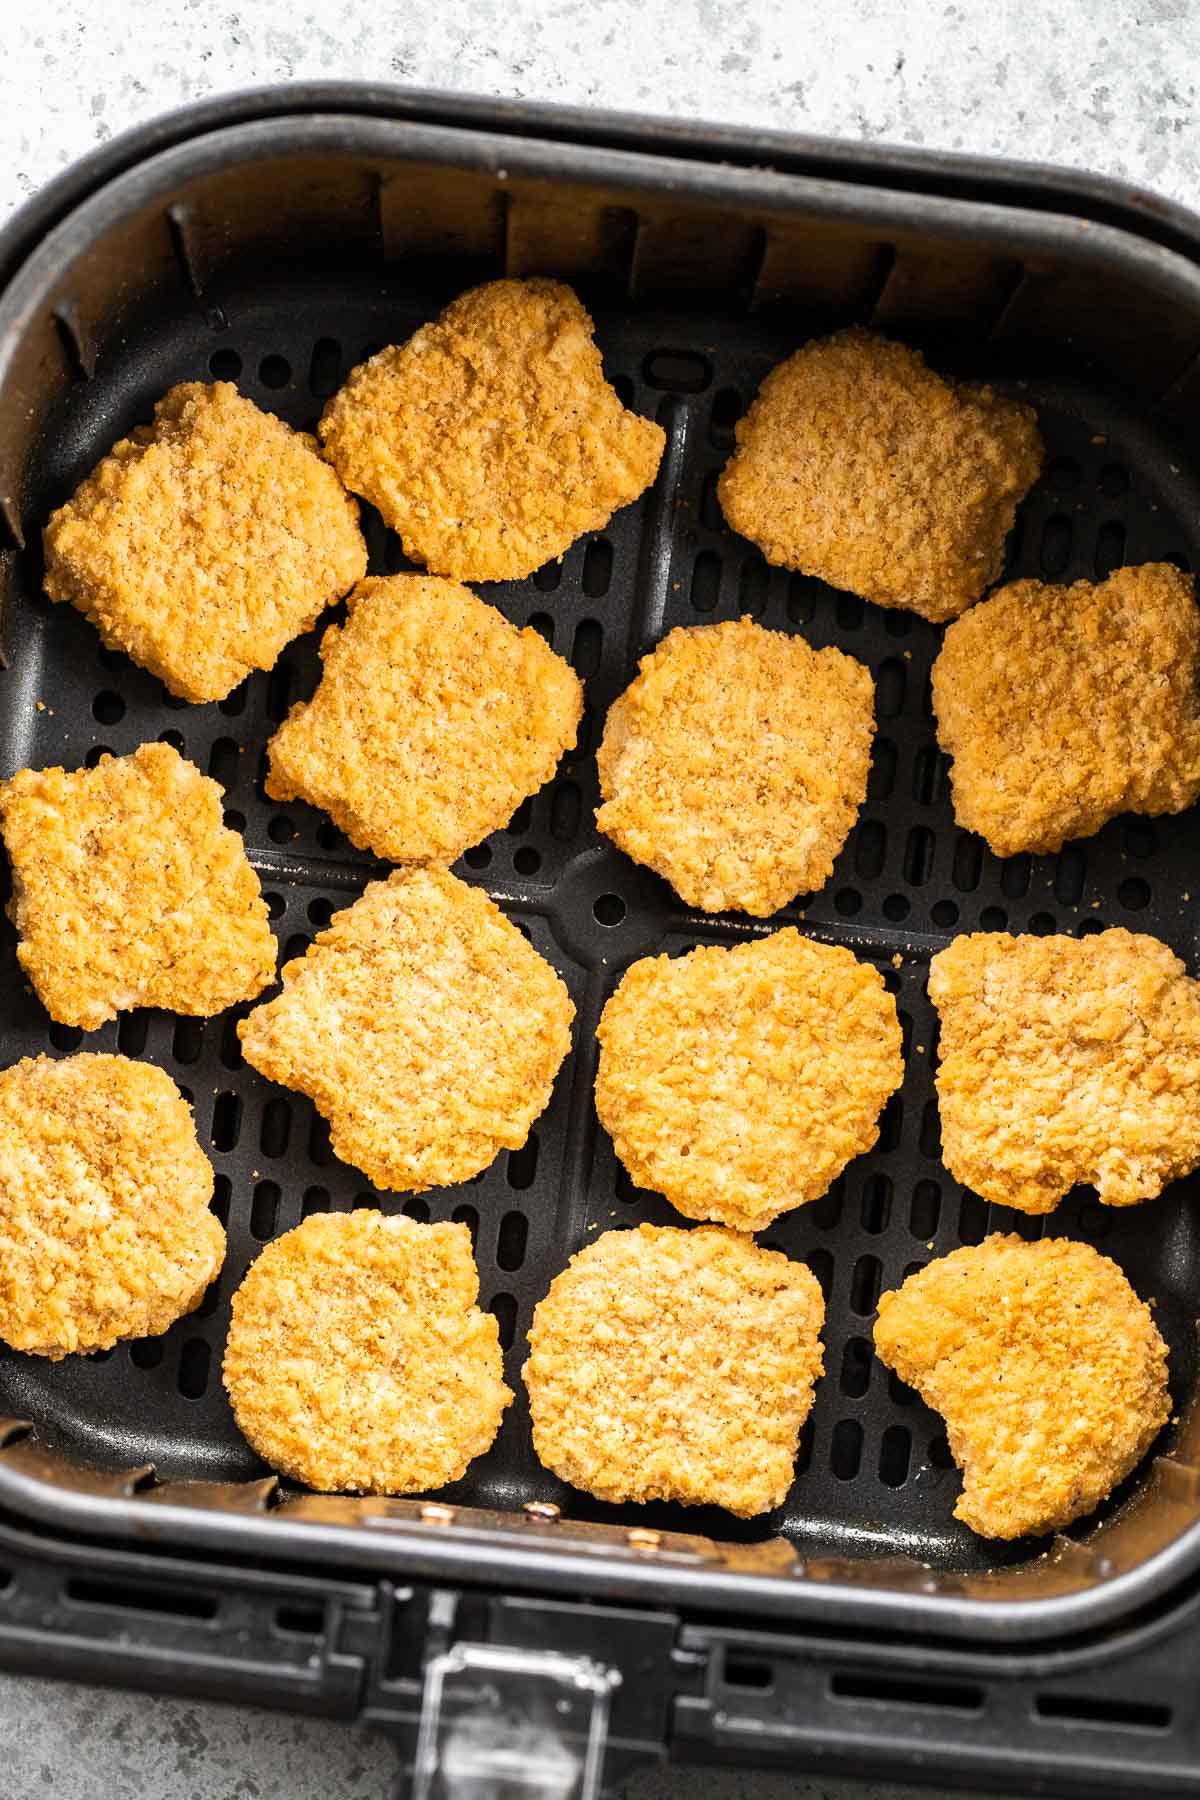 Frozen chicken nuggets in an Air Fryer basket.